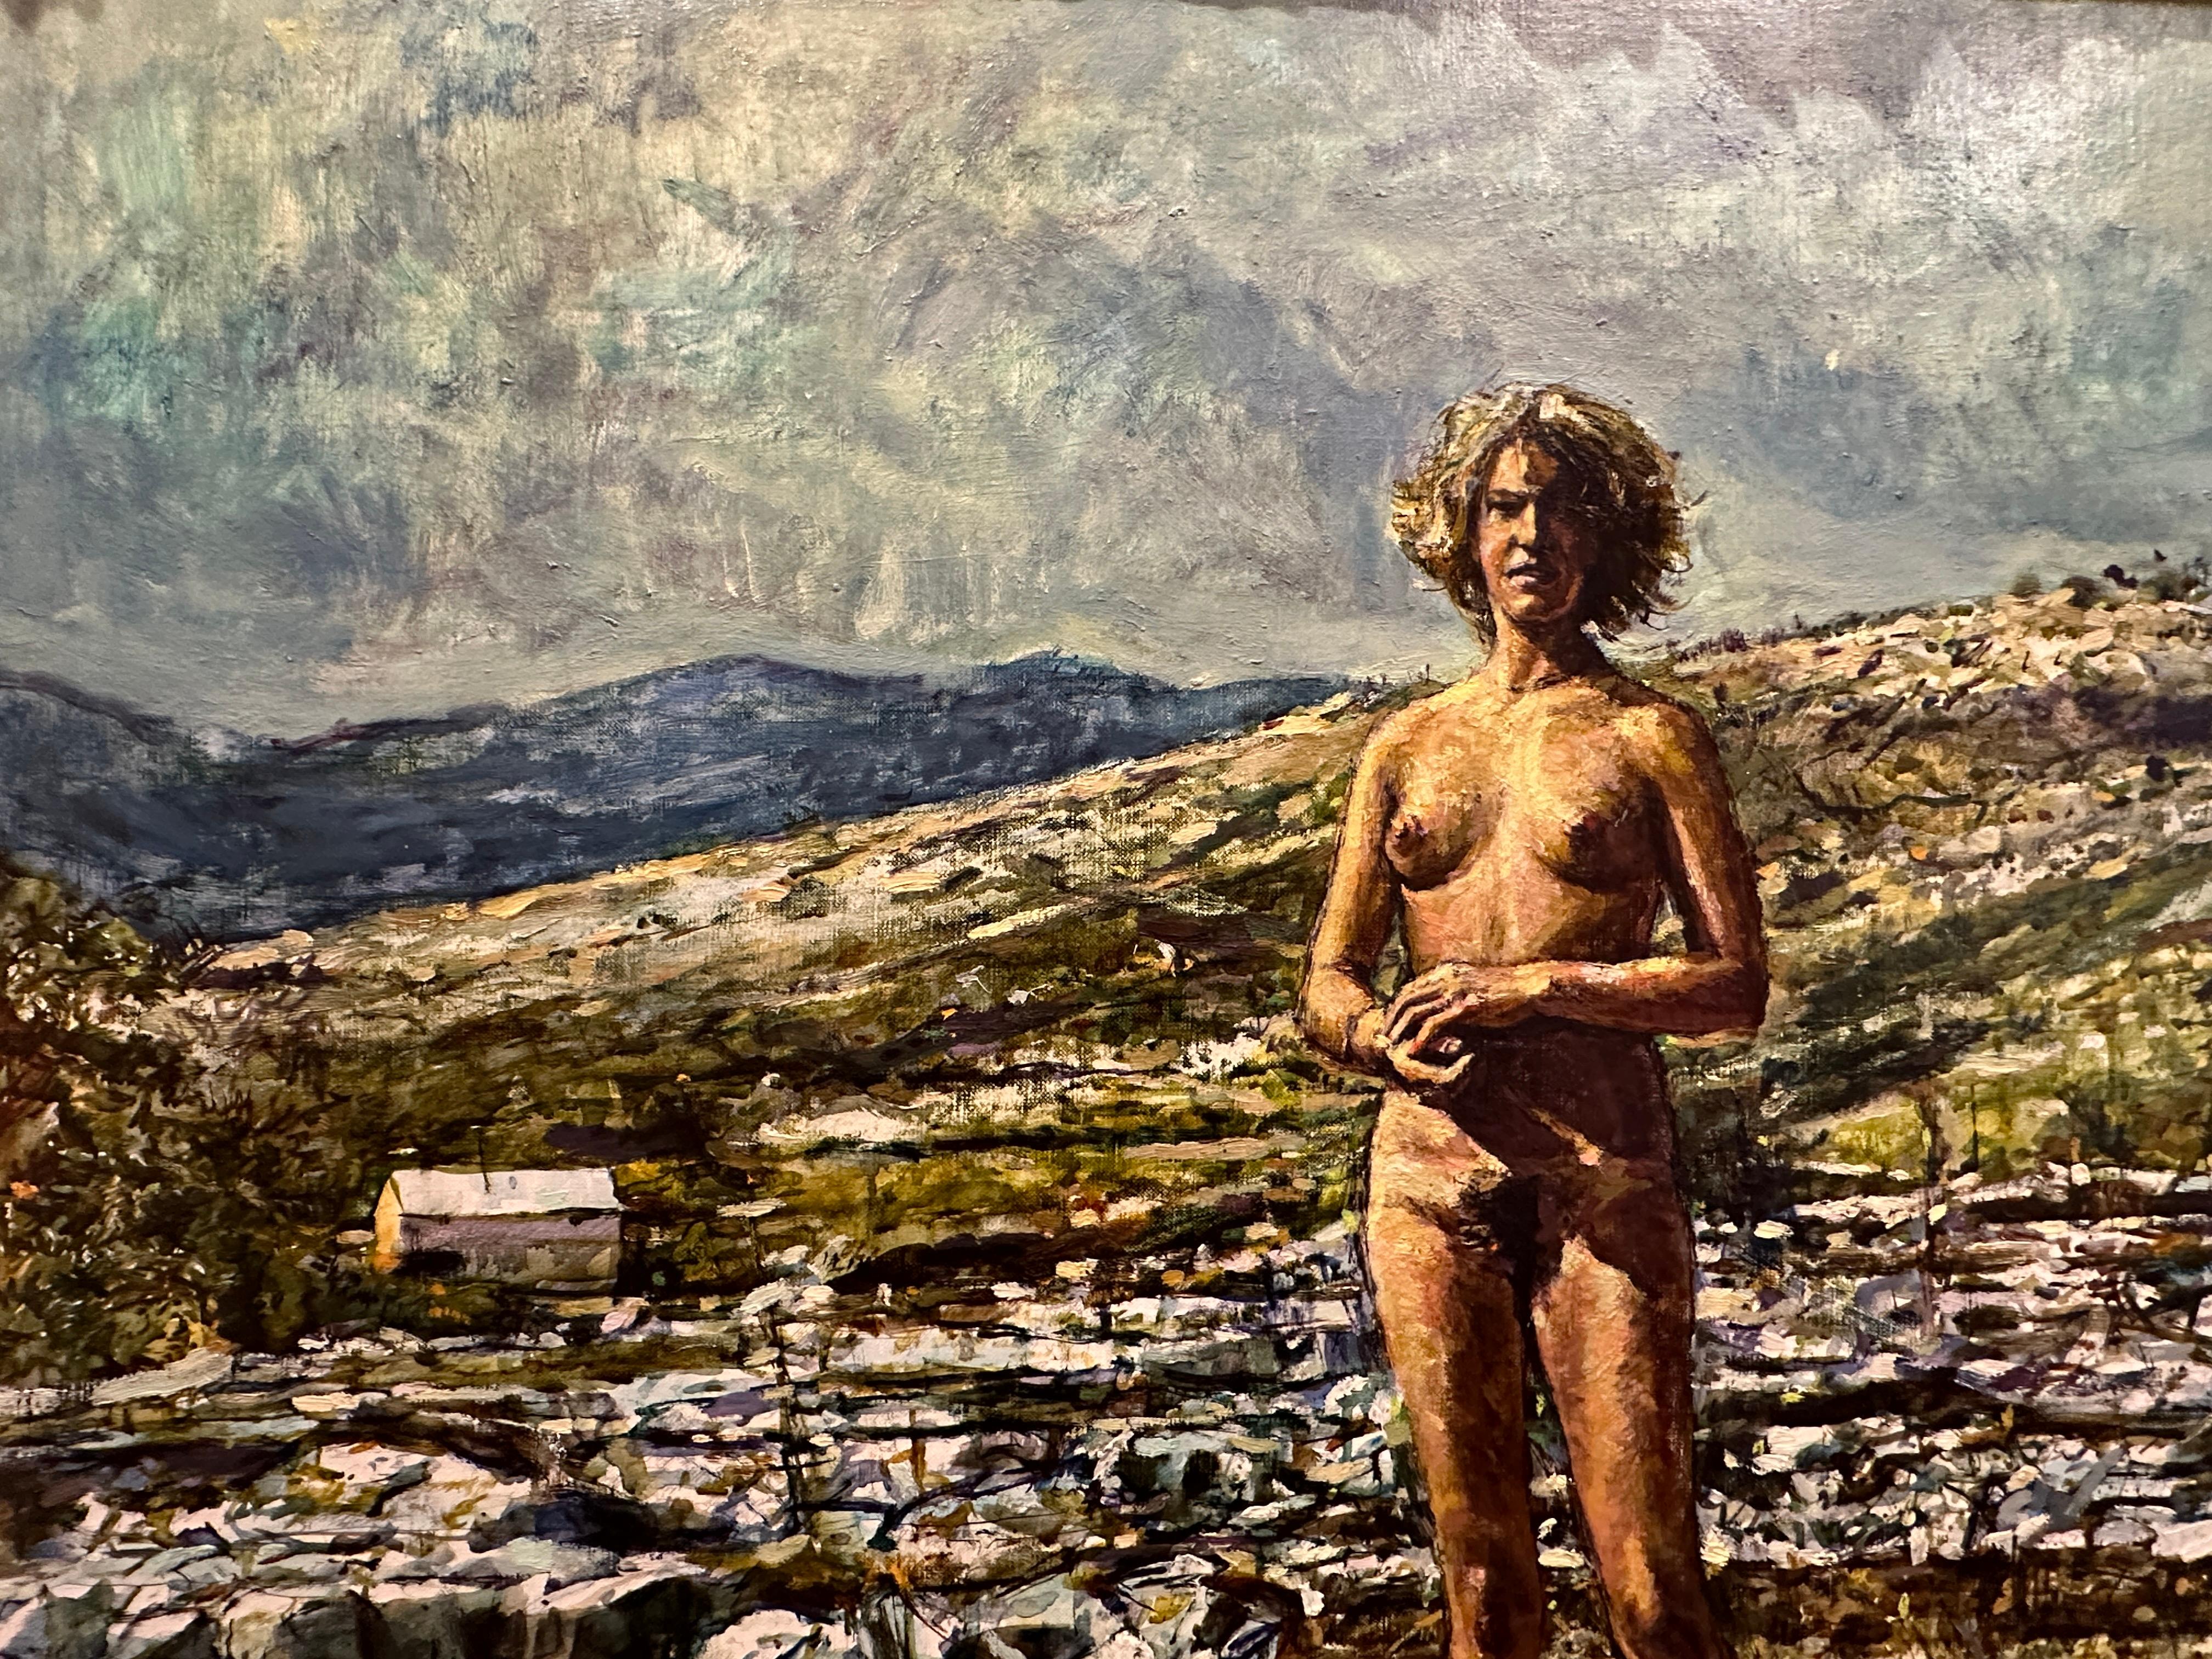 Le tableau représente une femme nue, dont l'aura respire l'assurance. Elle se tient droite sur le terrain accidenté d'une montagne rocheuse. Ses cheveux bouclés encadrent librement son visage. L'œuvre est élégante, dénuée de tout soupçon d'érotisme.